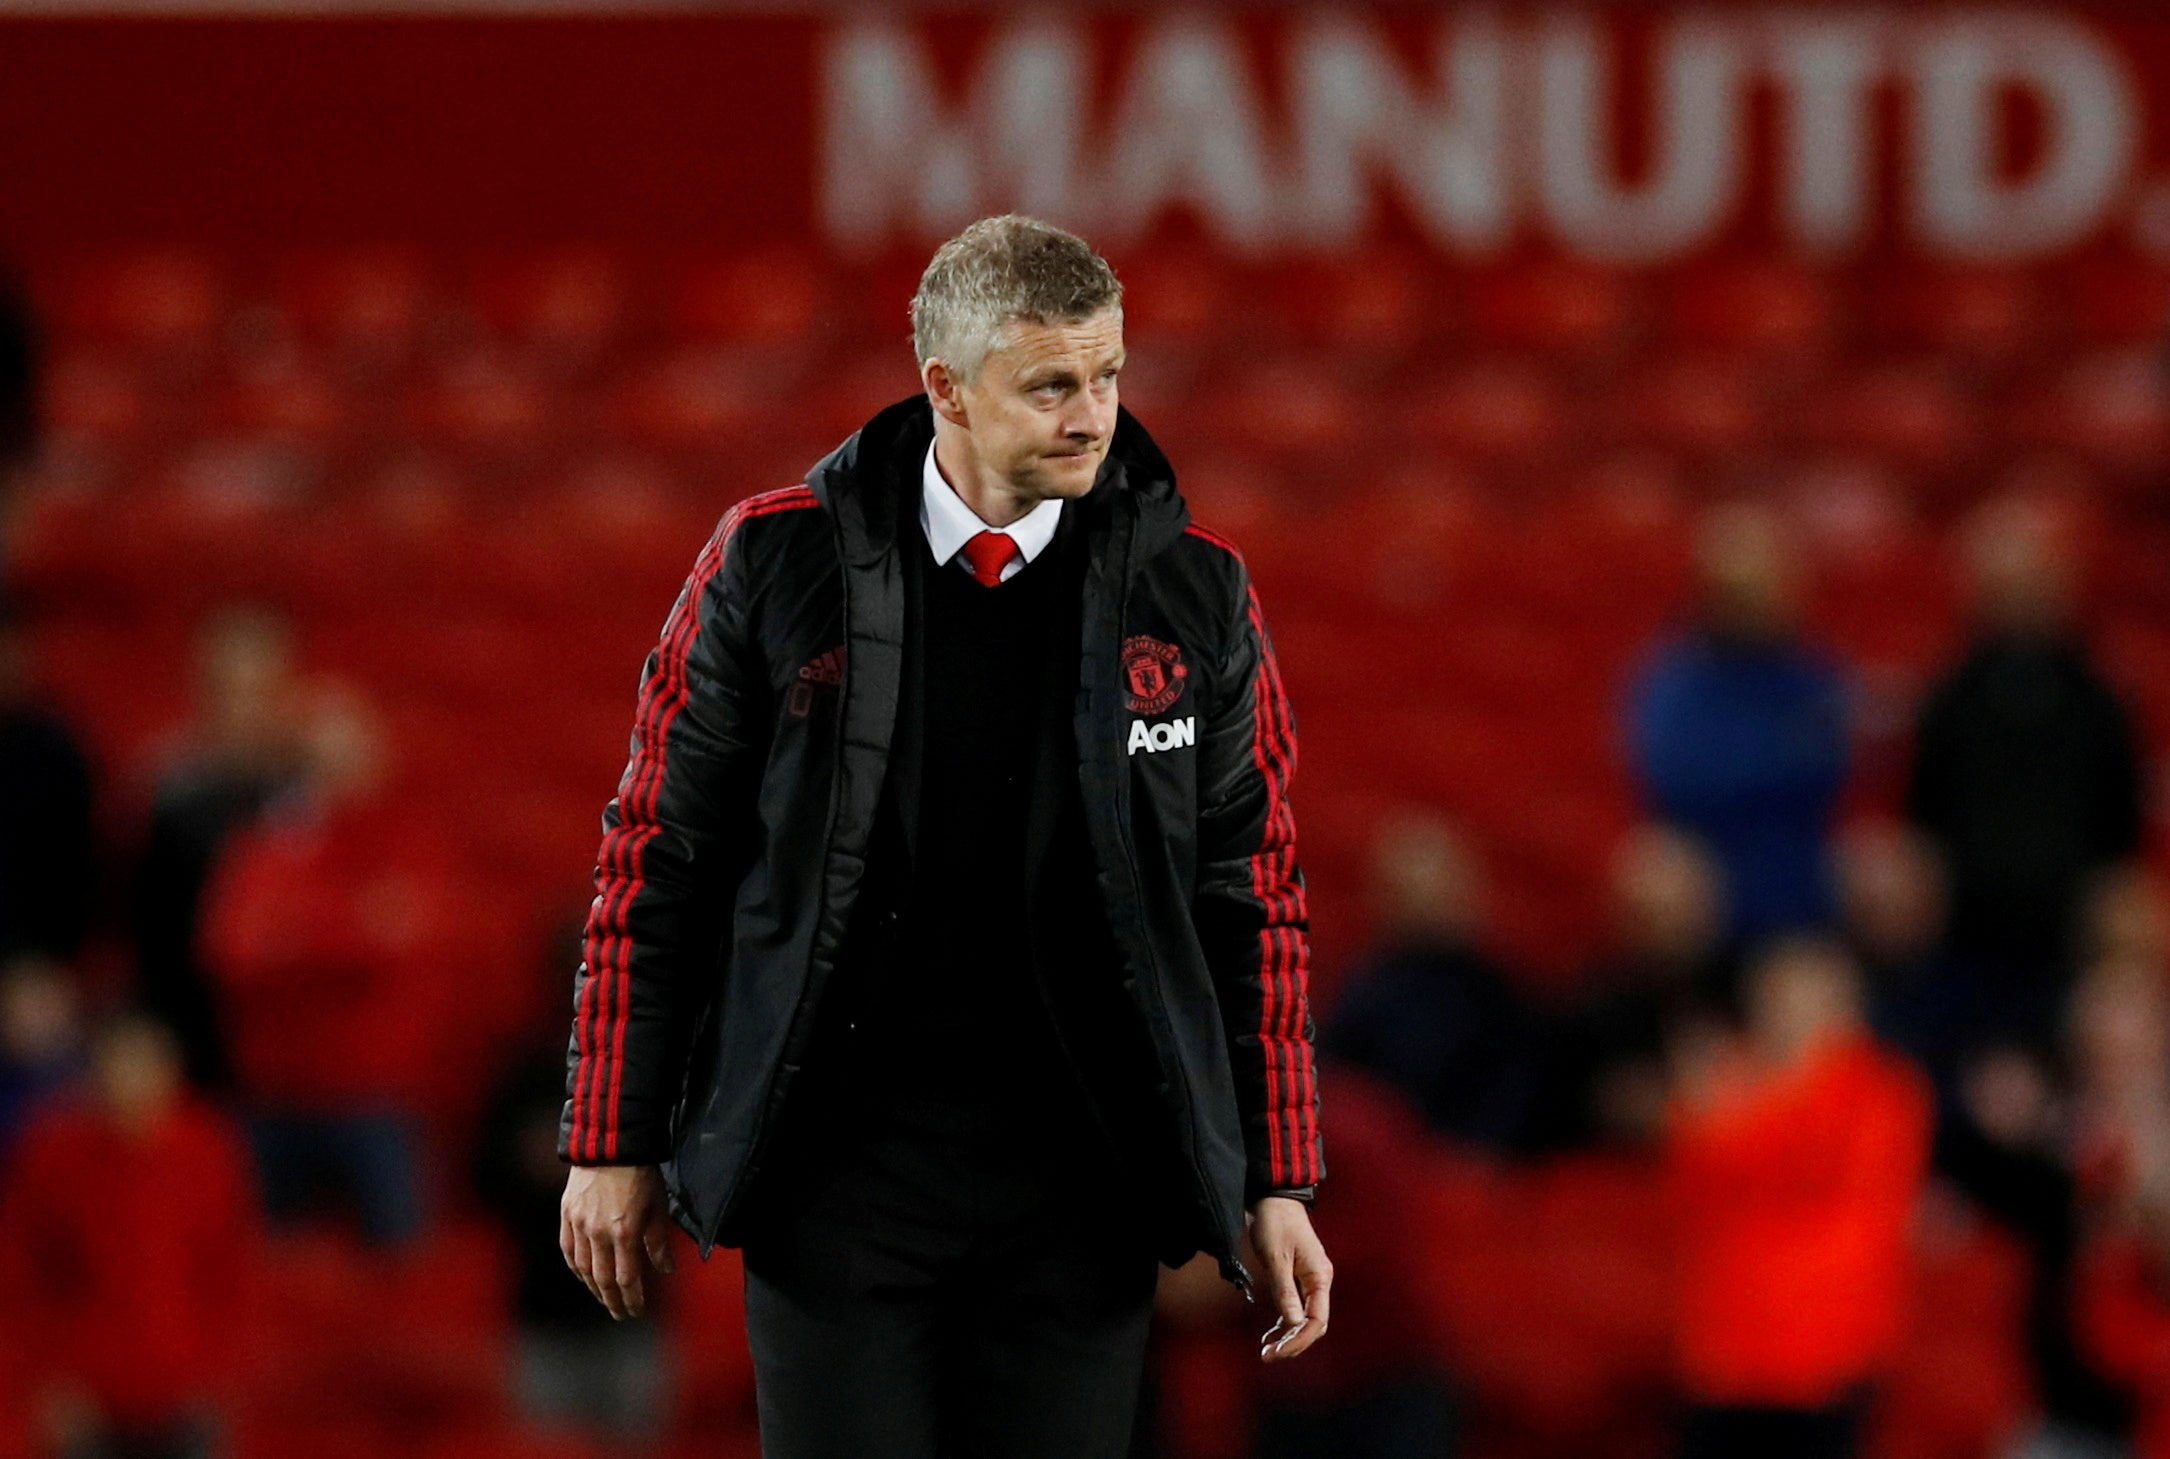 Ole Gunnar Solskjaer was sacked as Man United head coach on Sunday